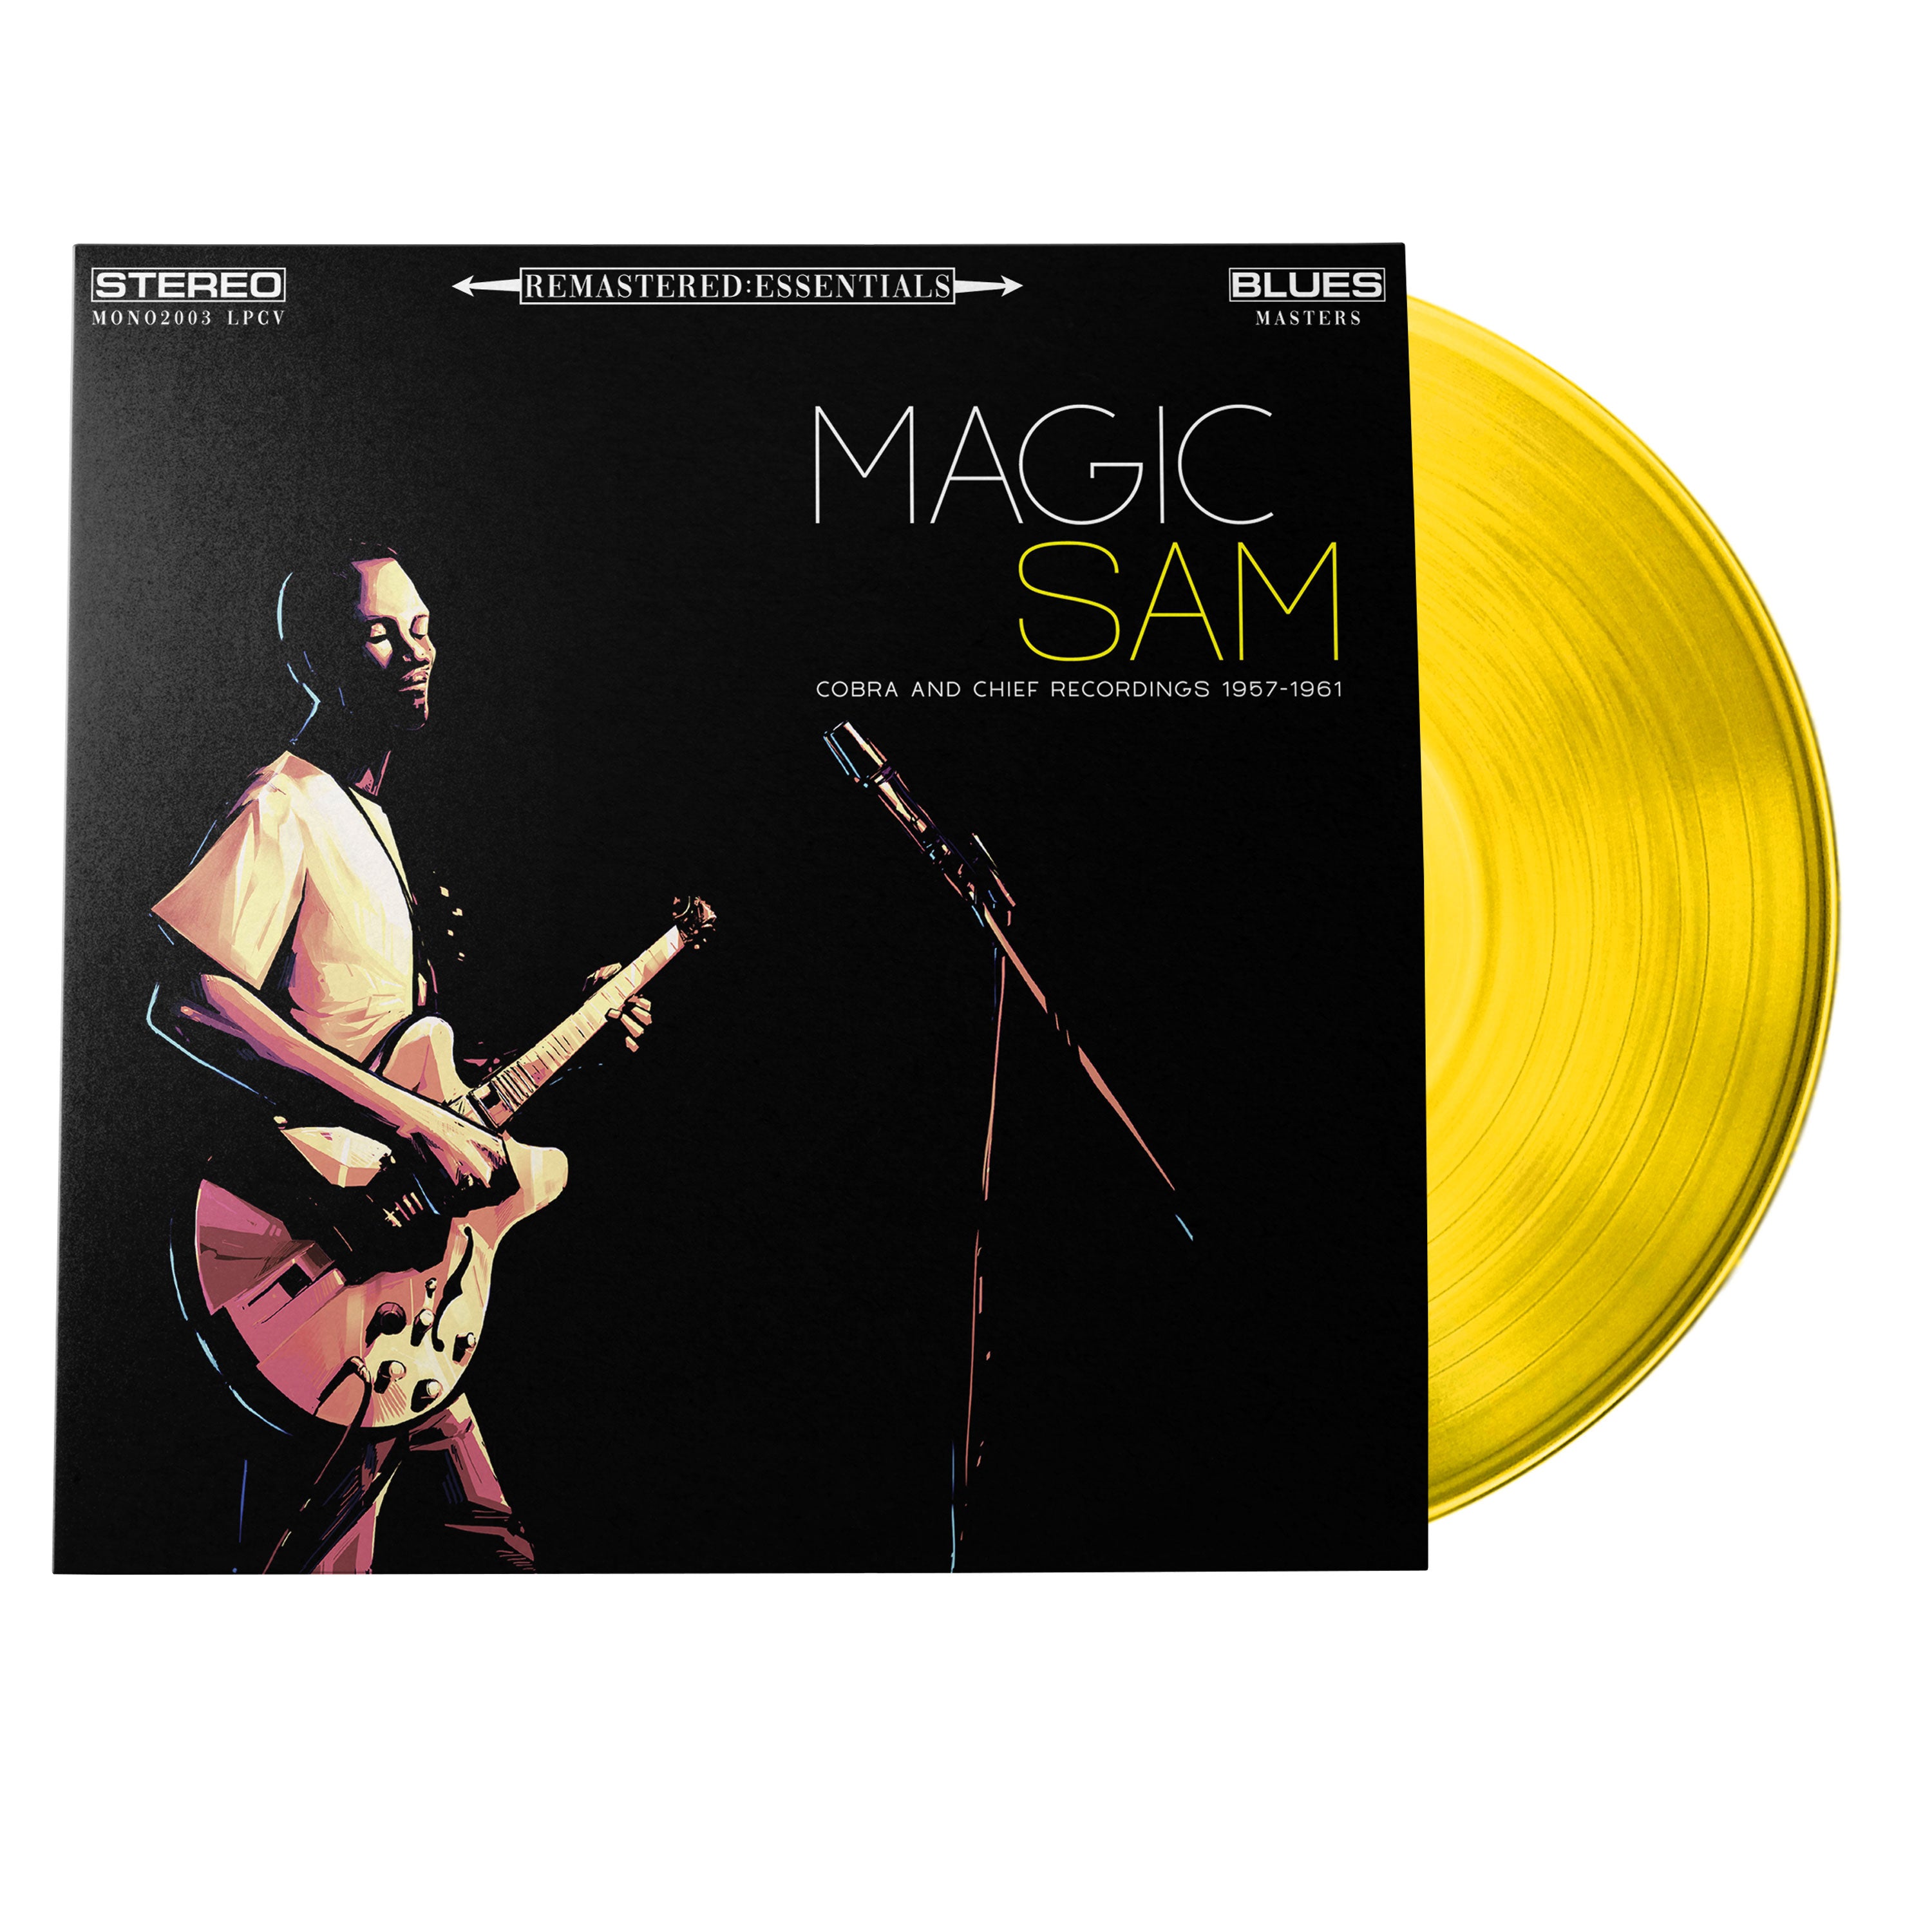 Magic Sam | Remastered:Essentials (Exclusive | Limited Edition | 180 Gram Translucent Yellow Vinyl) | Vinyl